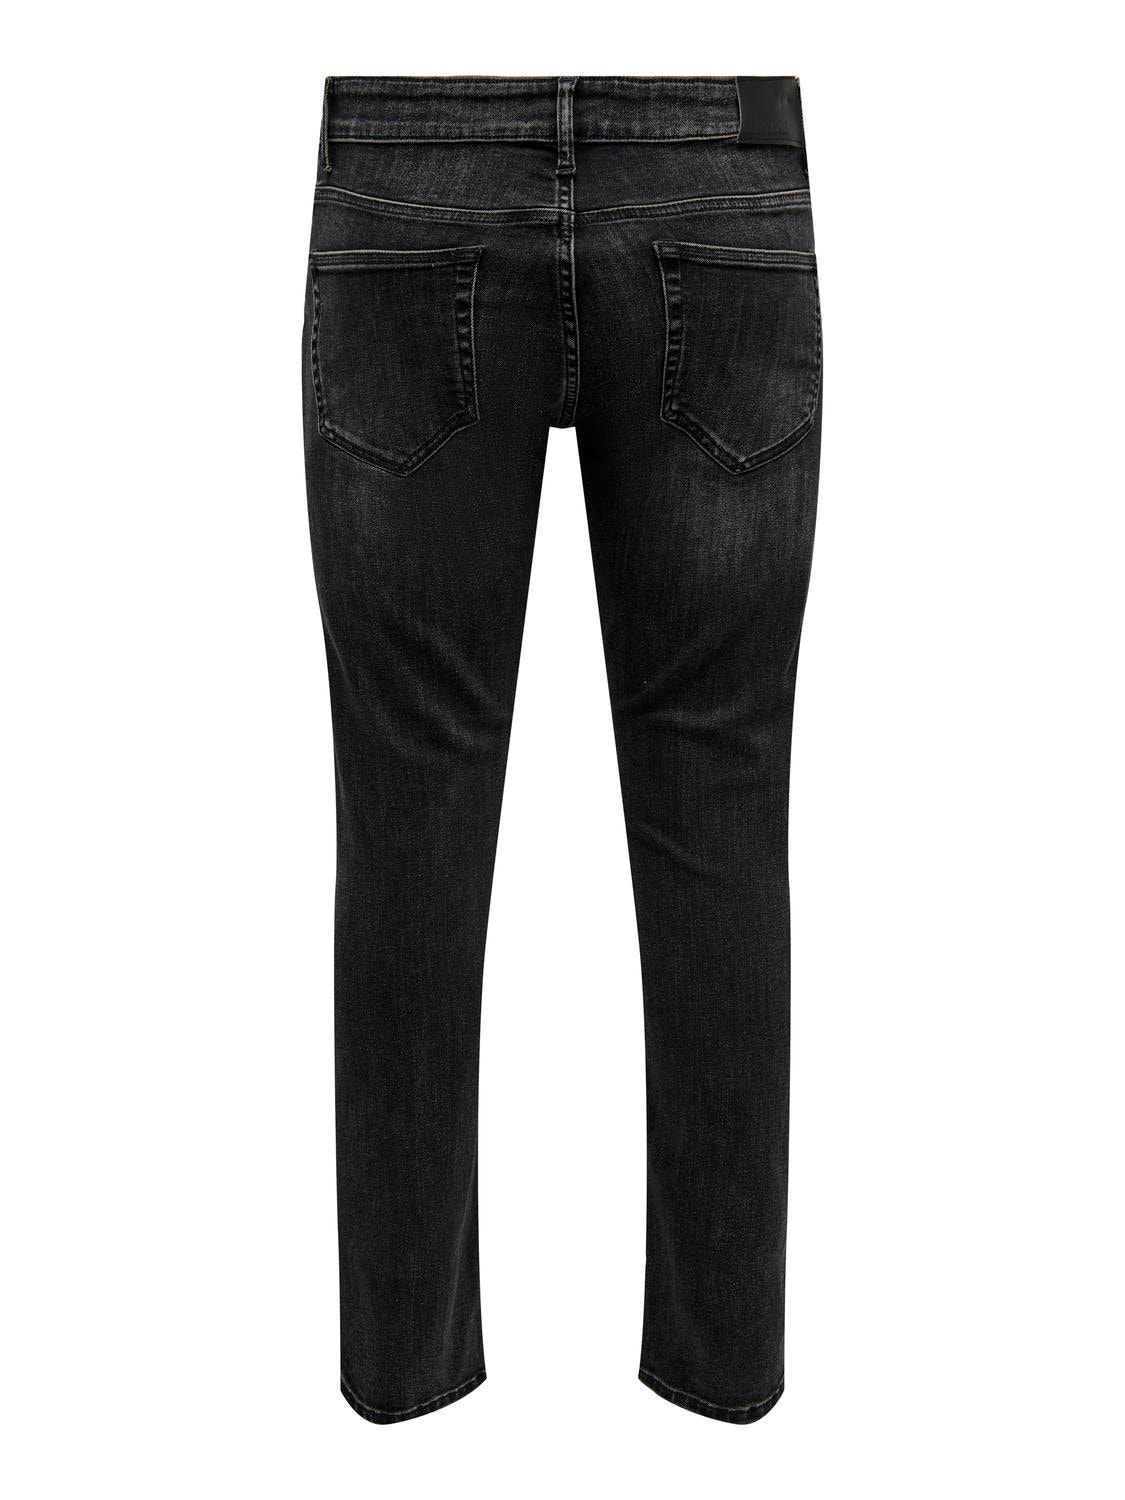 ONLY & SONS ONSLoom Slim Jeans -Washed Black - 22025096